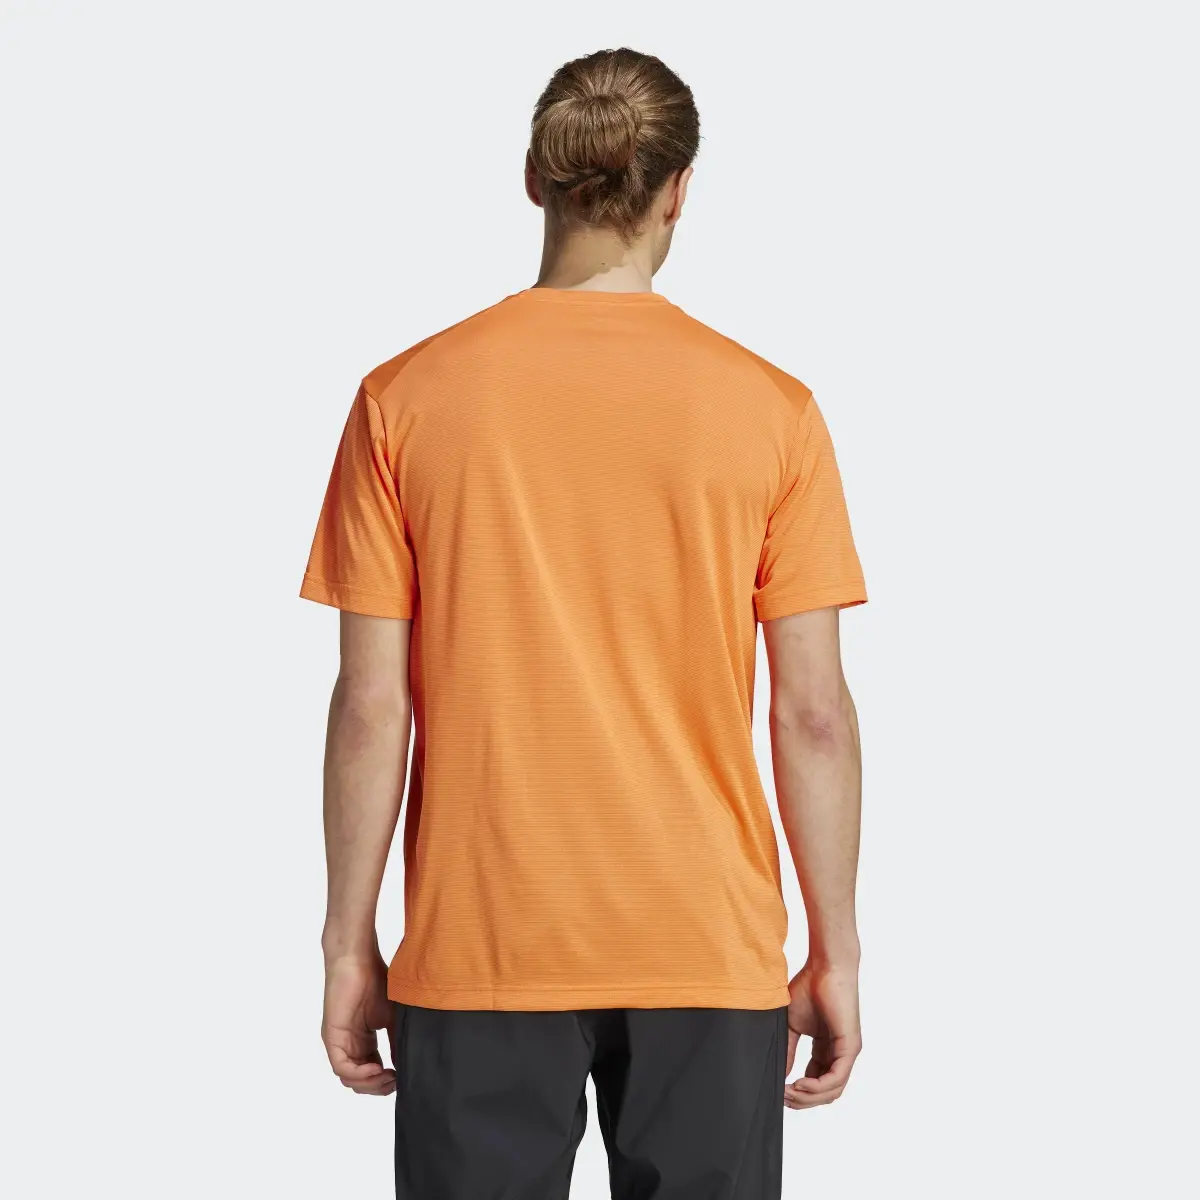 Adidas T-shirt Multi TERREX. 3